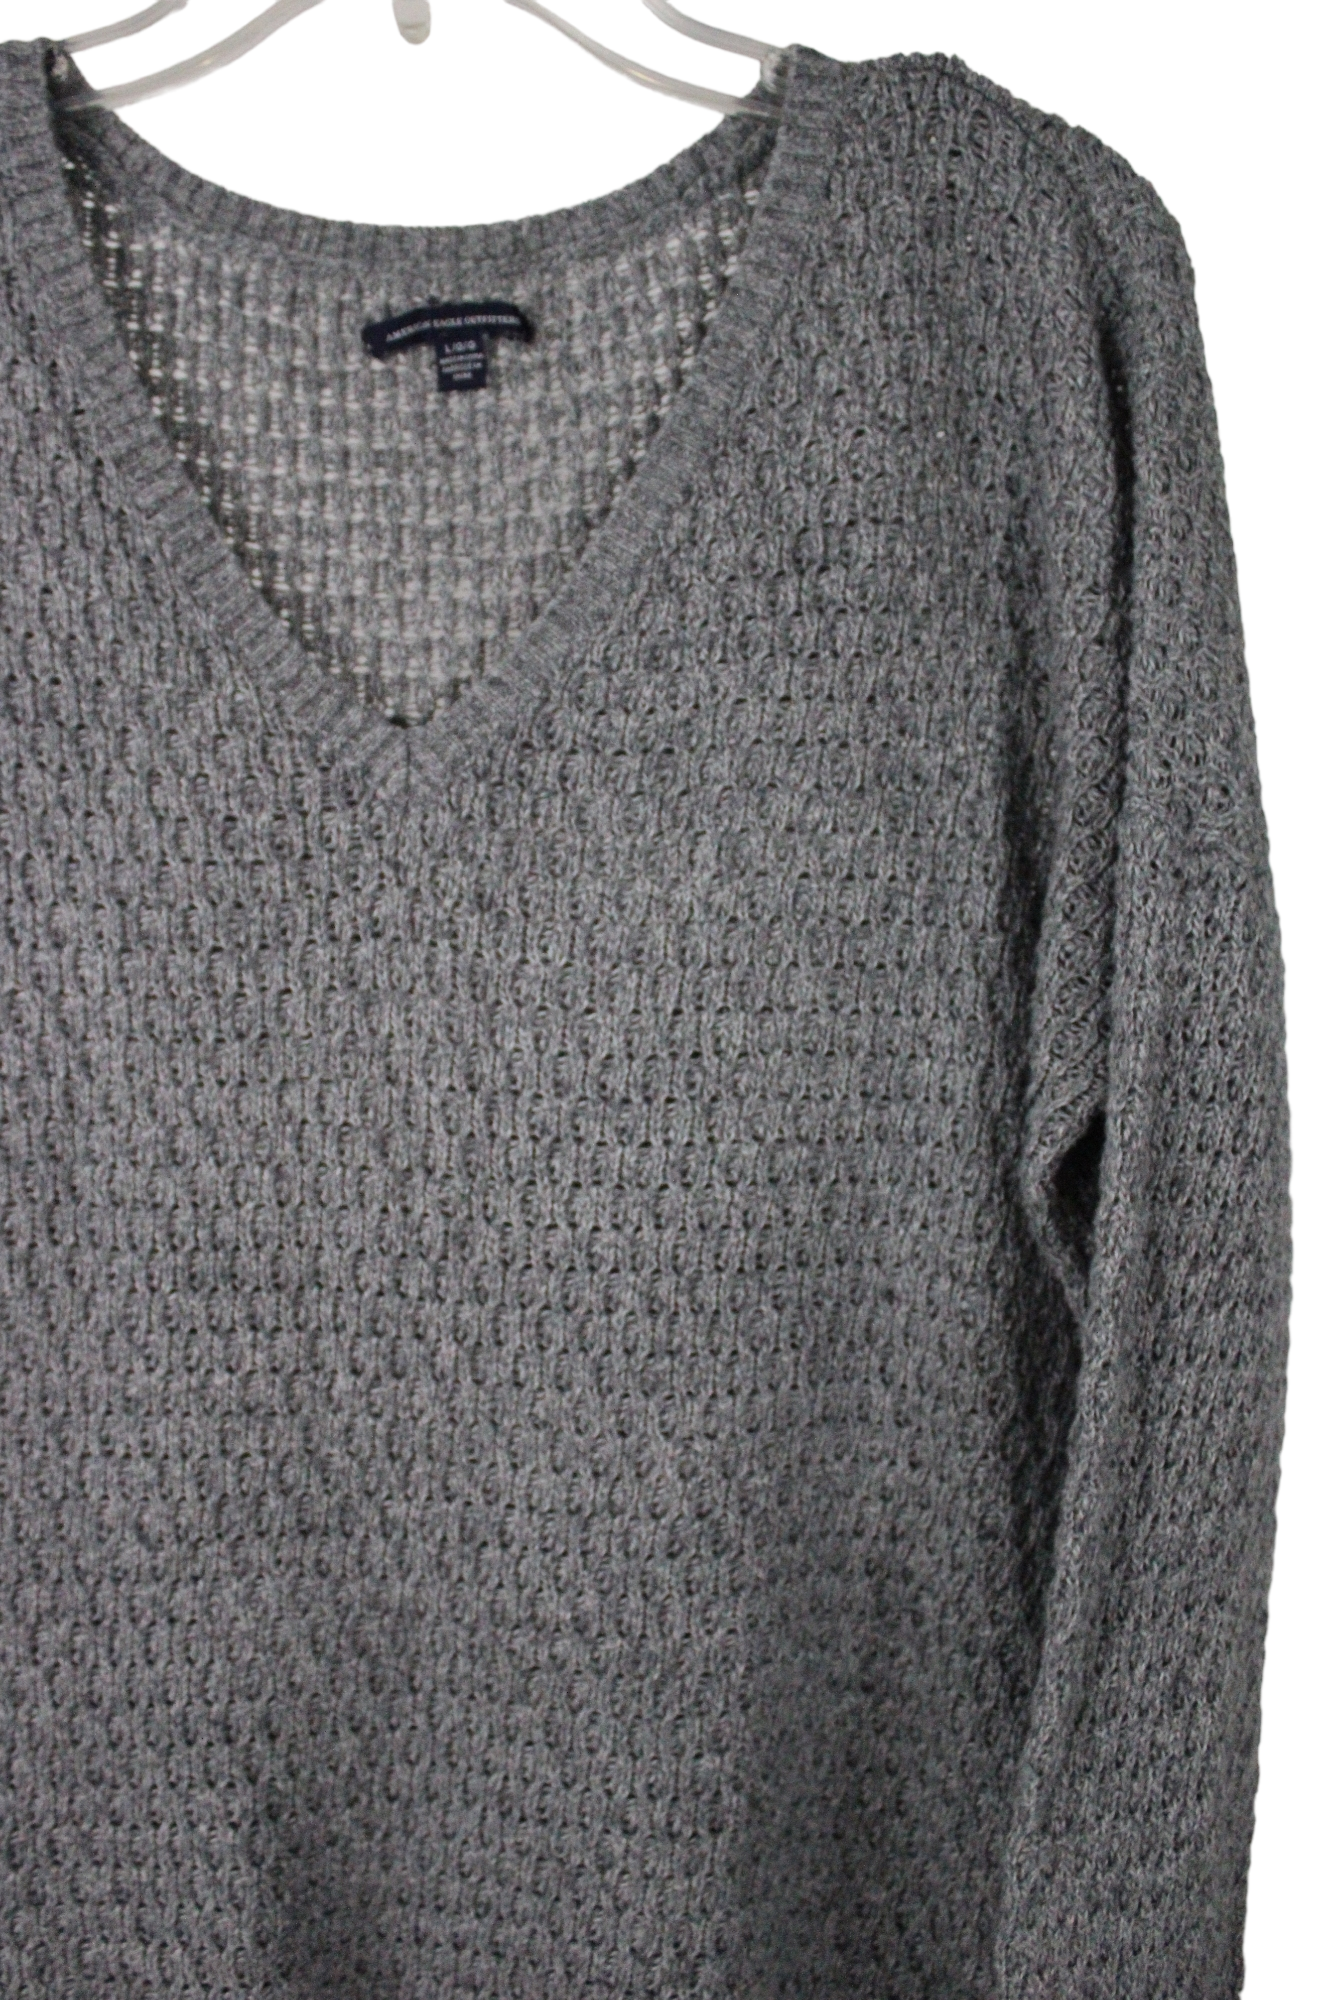 American Eagle Gray Sweater | L